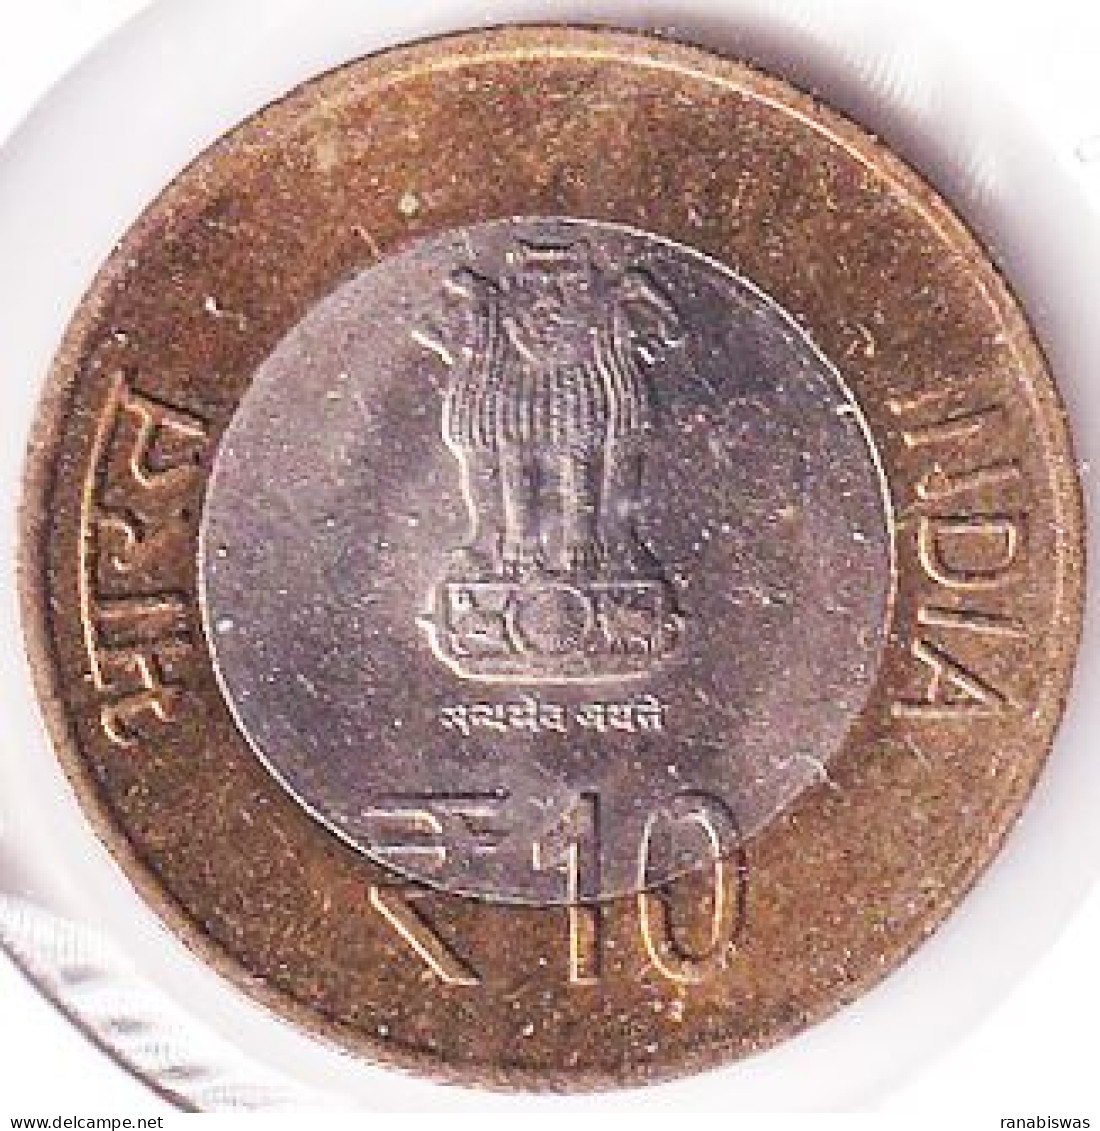 INDIA COIN LOT 447, 10 RUPEES 2012, MATA VAISHNO DEVI, HYDERABAD MINT, UNC - Inde